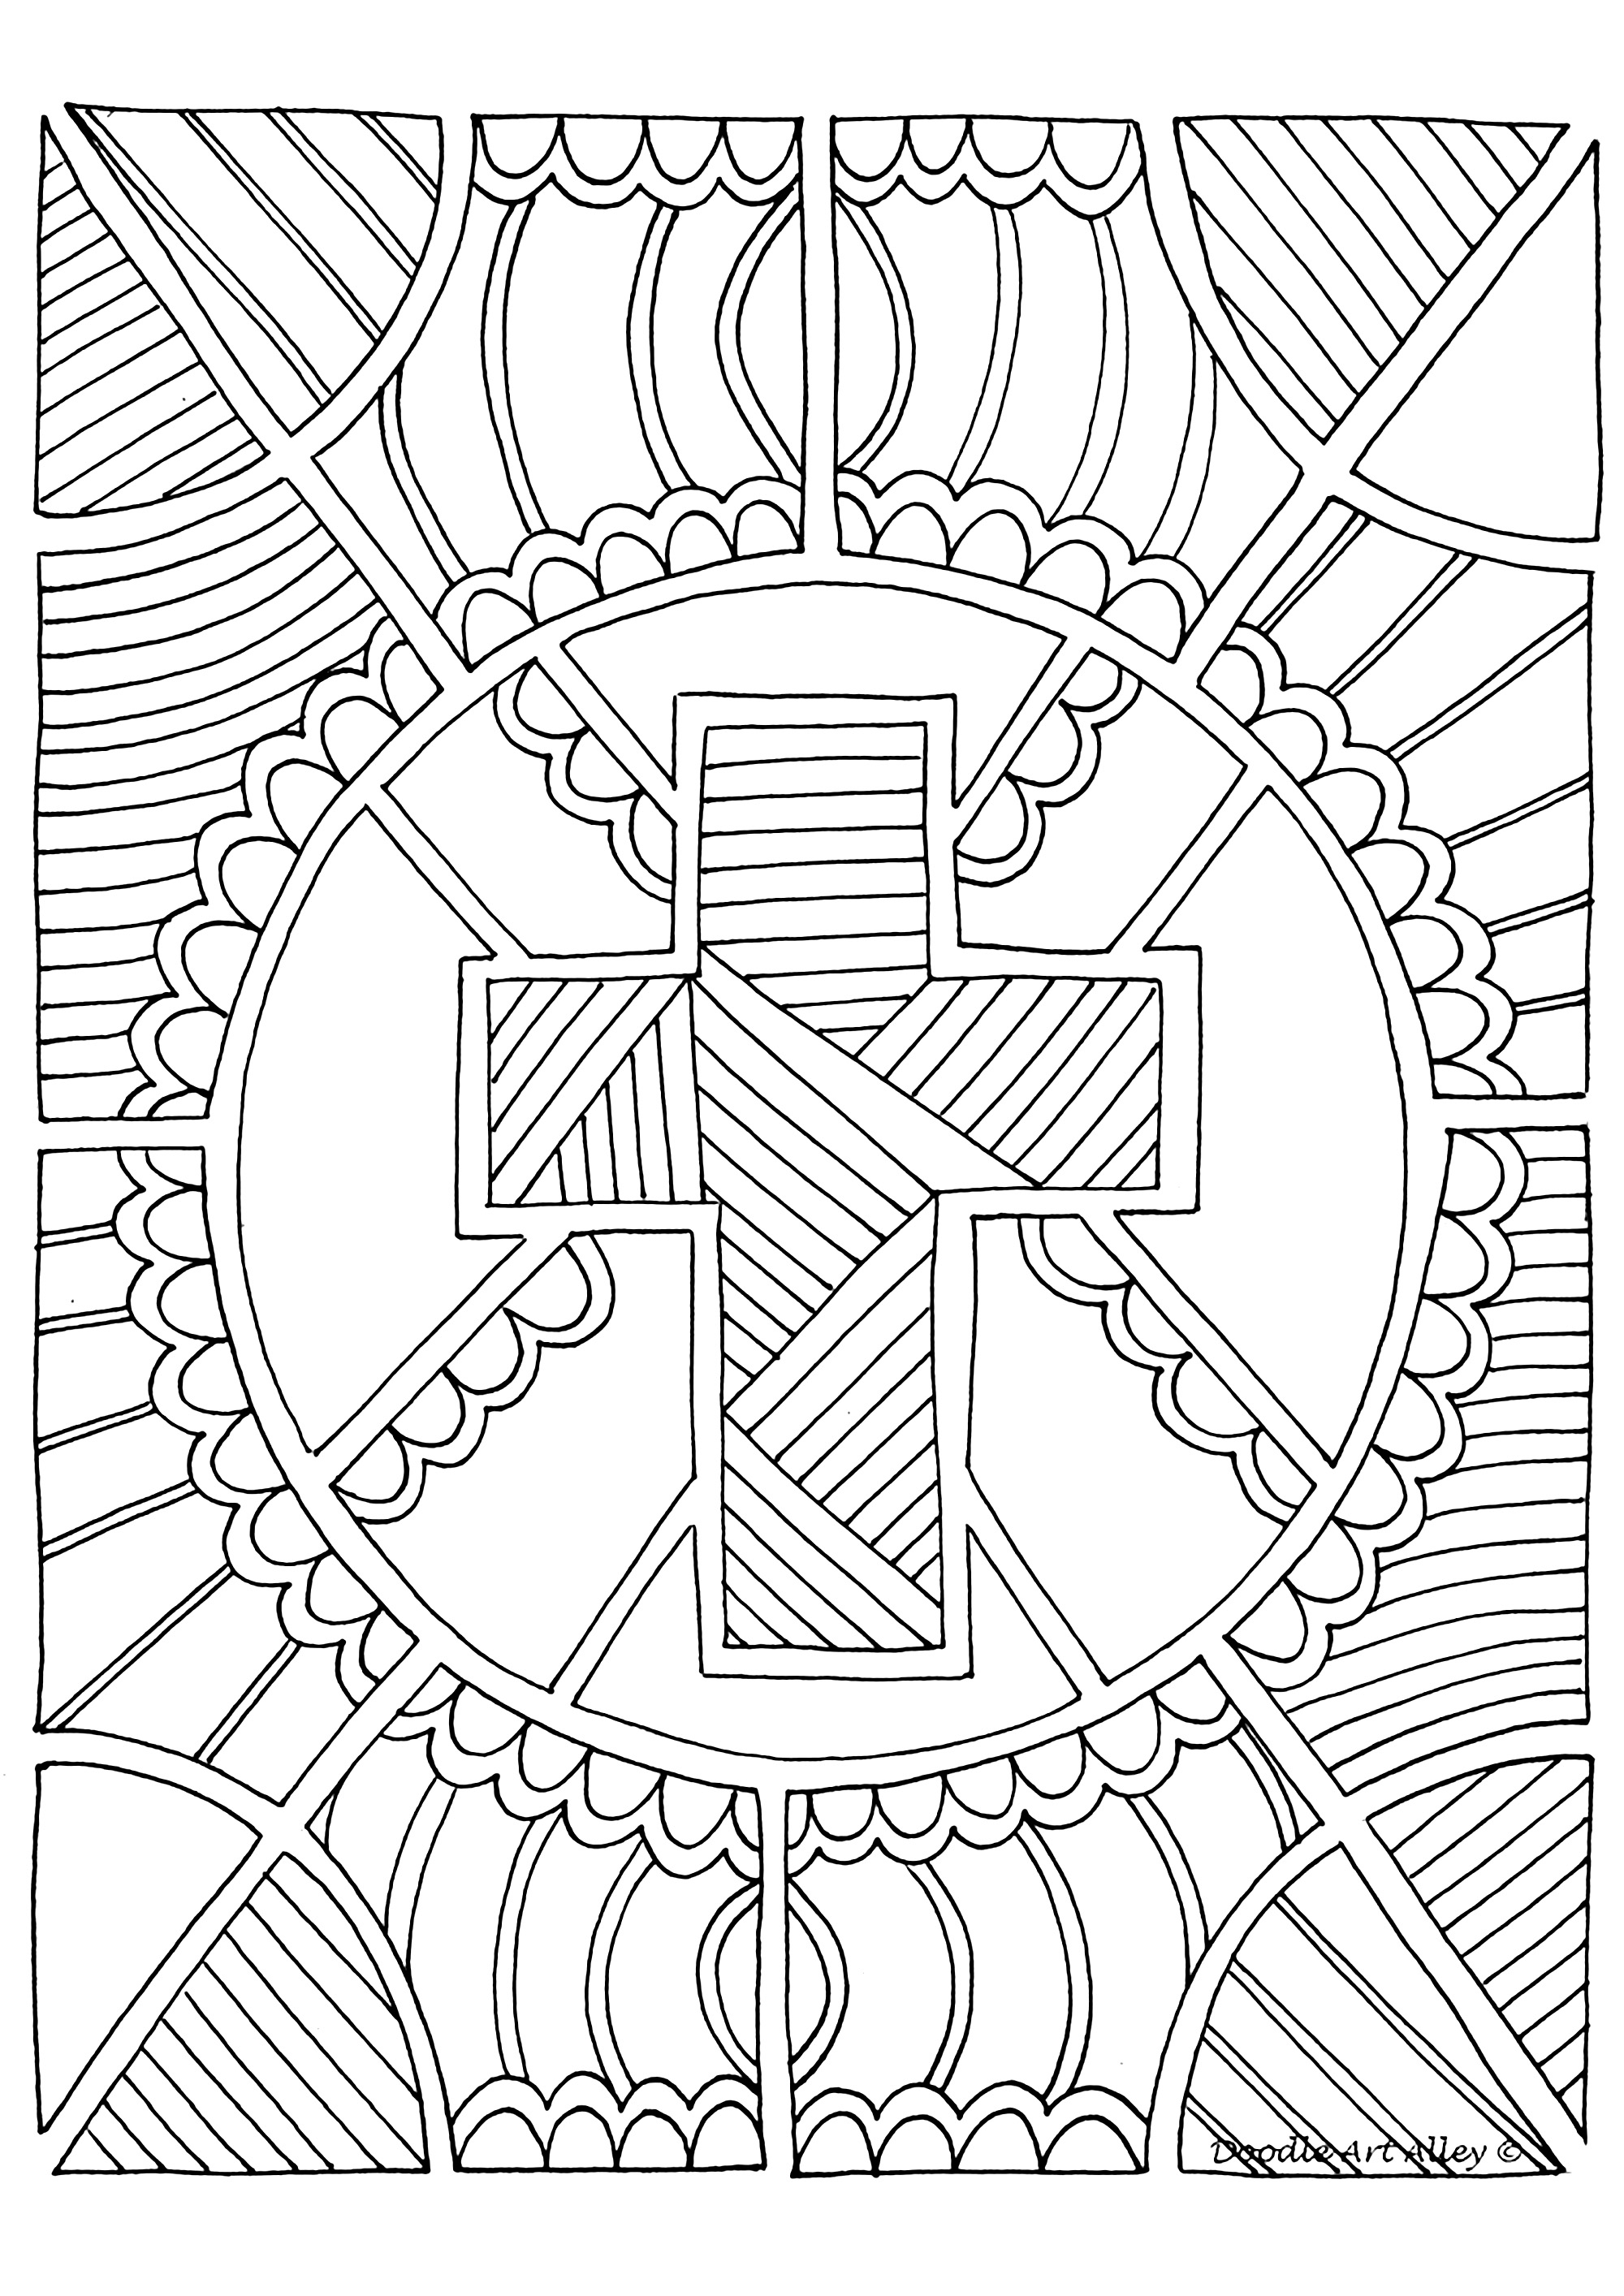 A Cruz, símbolo da Cristandade. Um desenho com muitos motivos para colorir